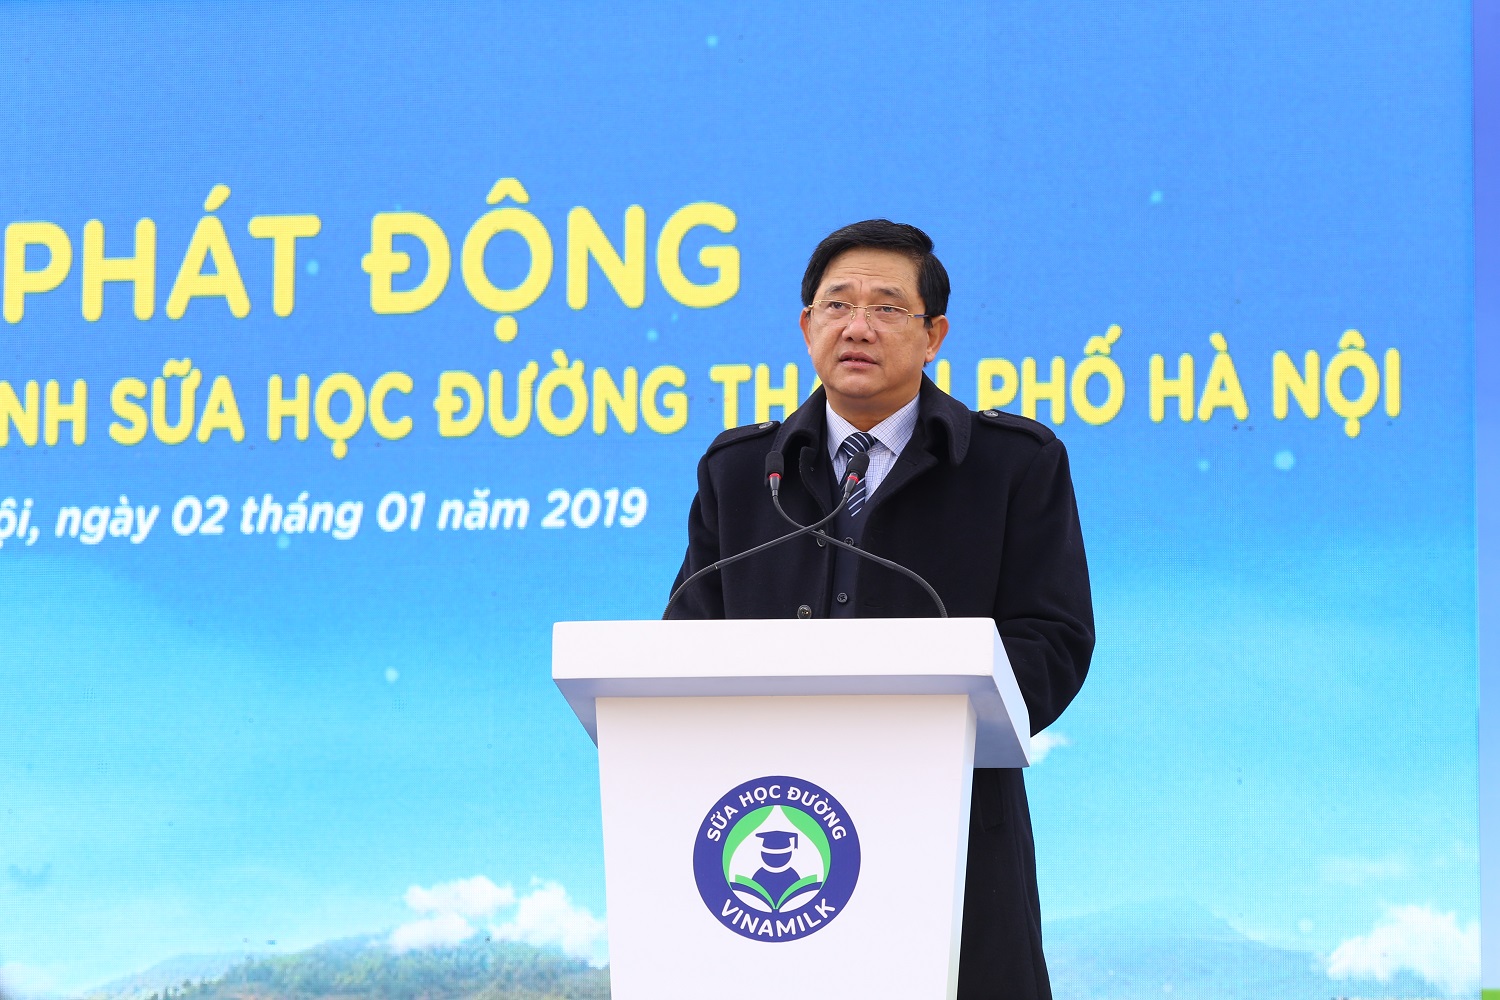 Ông Phạm Xuân Tiến – Phó Giám đốc Sở Giáo dục và Đào tạo Hà Nội phát biểu tại sự kiện.